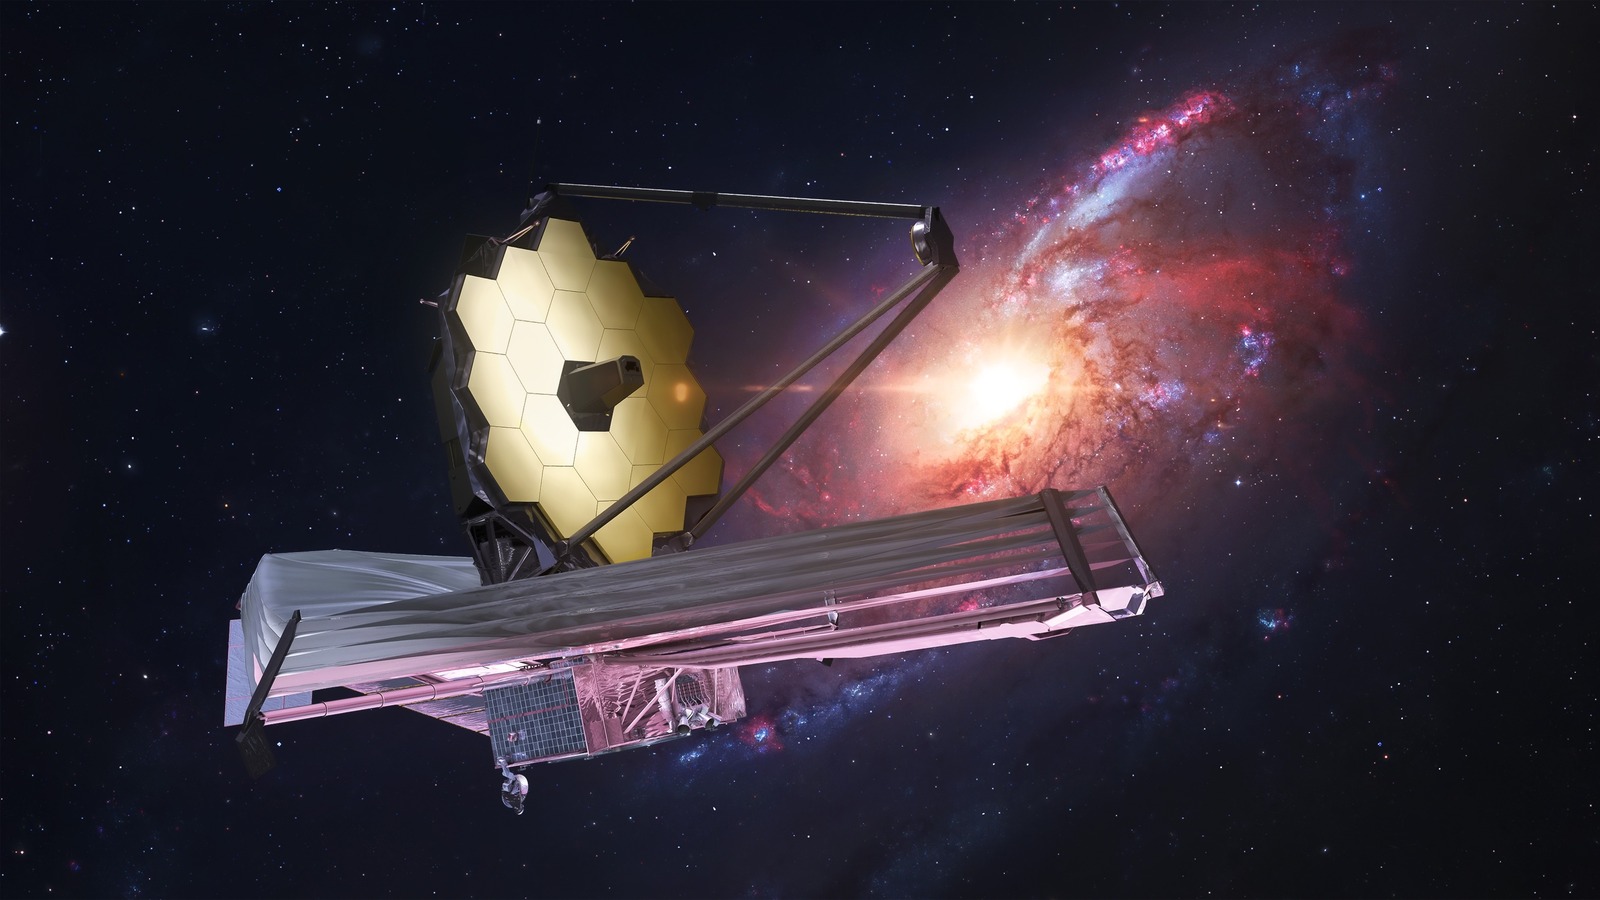 Revelada a primeira imagem colorida do telescópio espacial James Webb da NASA